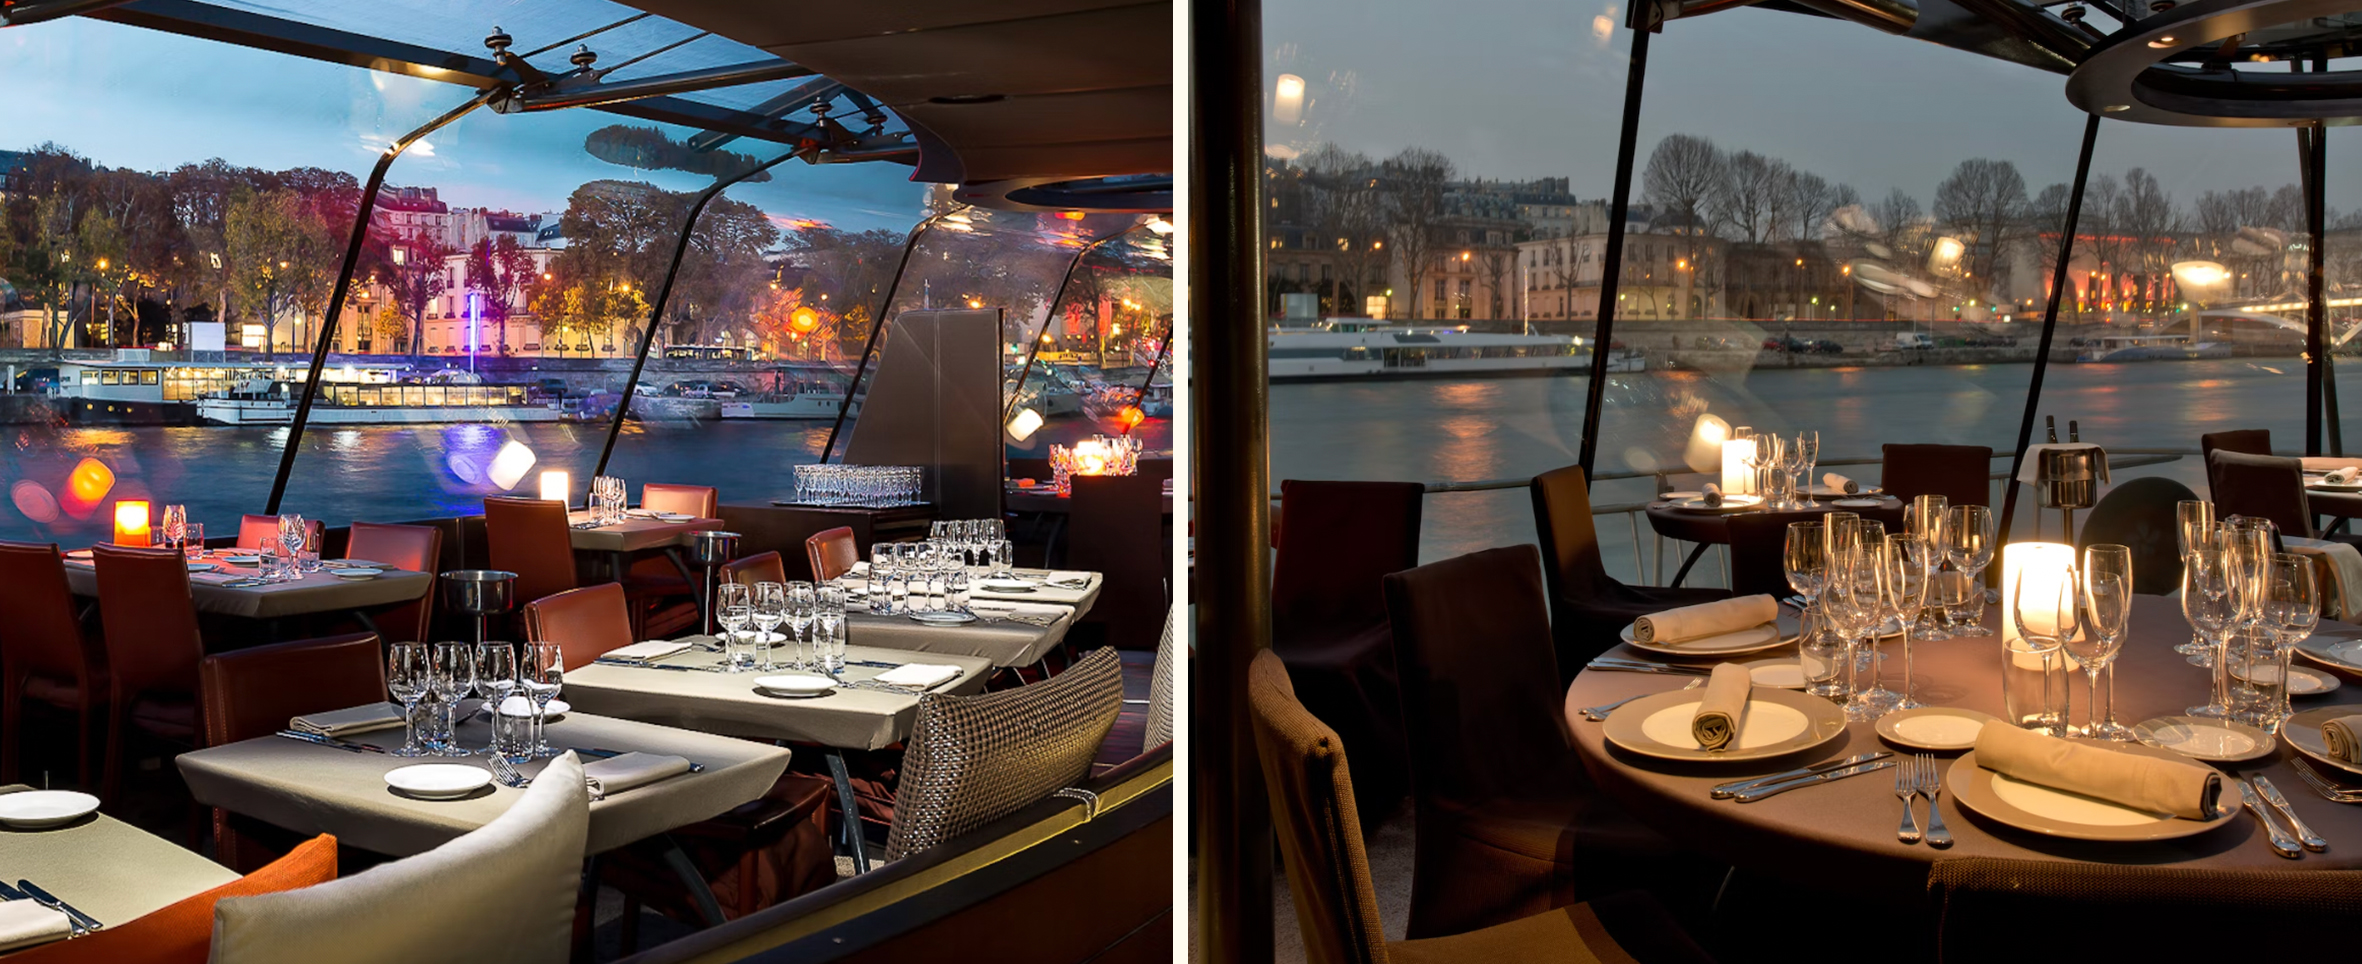 imagenes de la cena gastronómica en el río Sena